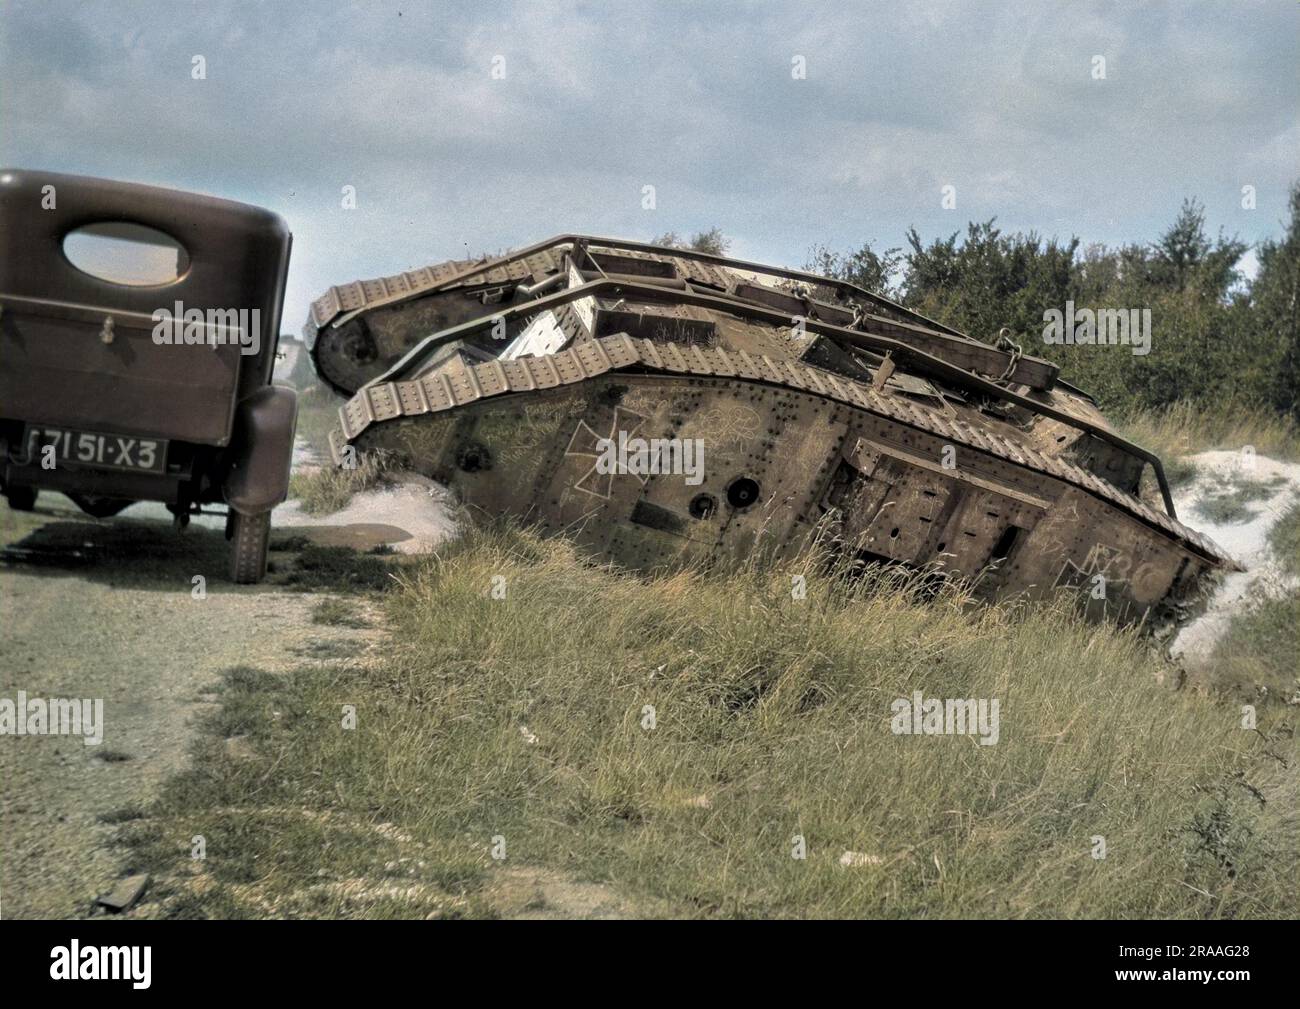 Ein deutscher Panzer aus dem 1. Weltkrieg in einem flachen Graben am Ende des Krieges, mit einem Auto, das vorbeifährt. Datum: Ca. Anfang 1920er Stockfoto